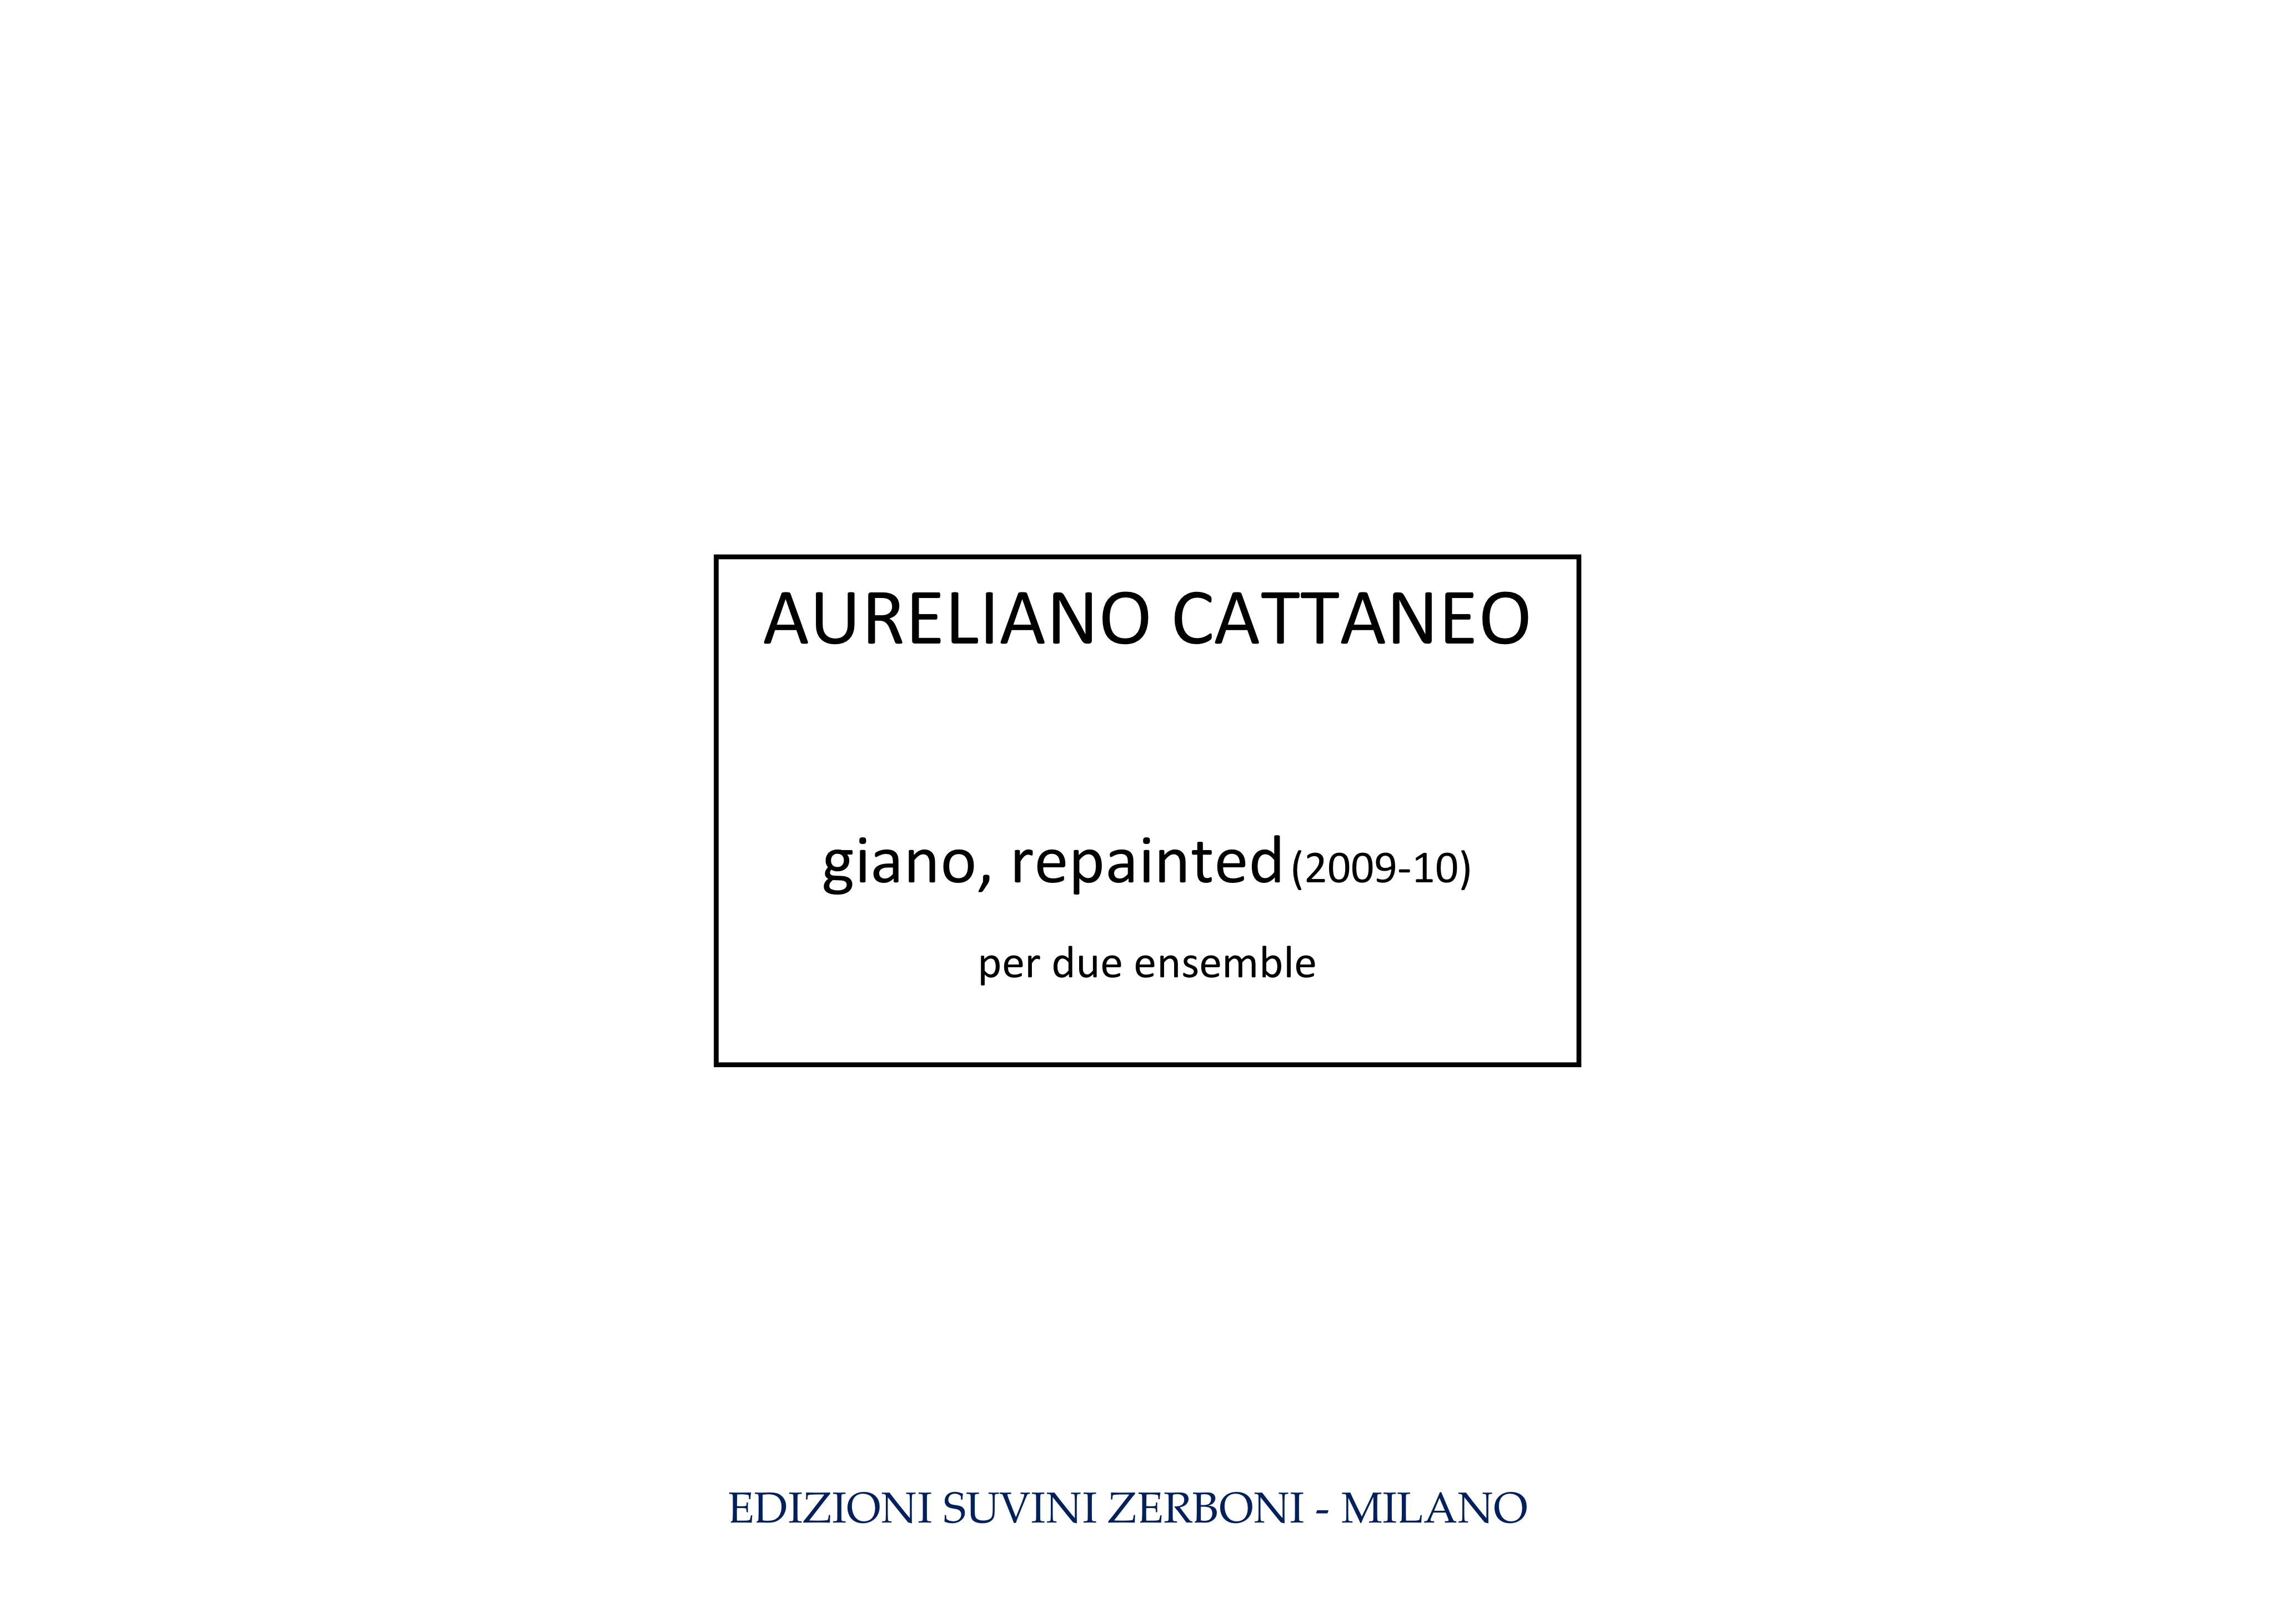 Giano repainted_Cattaneo 1